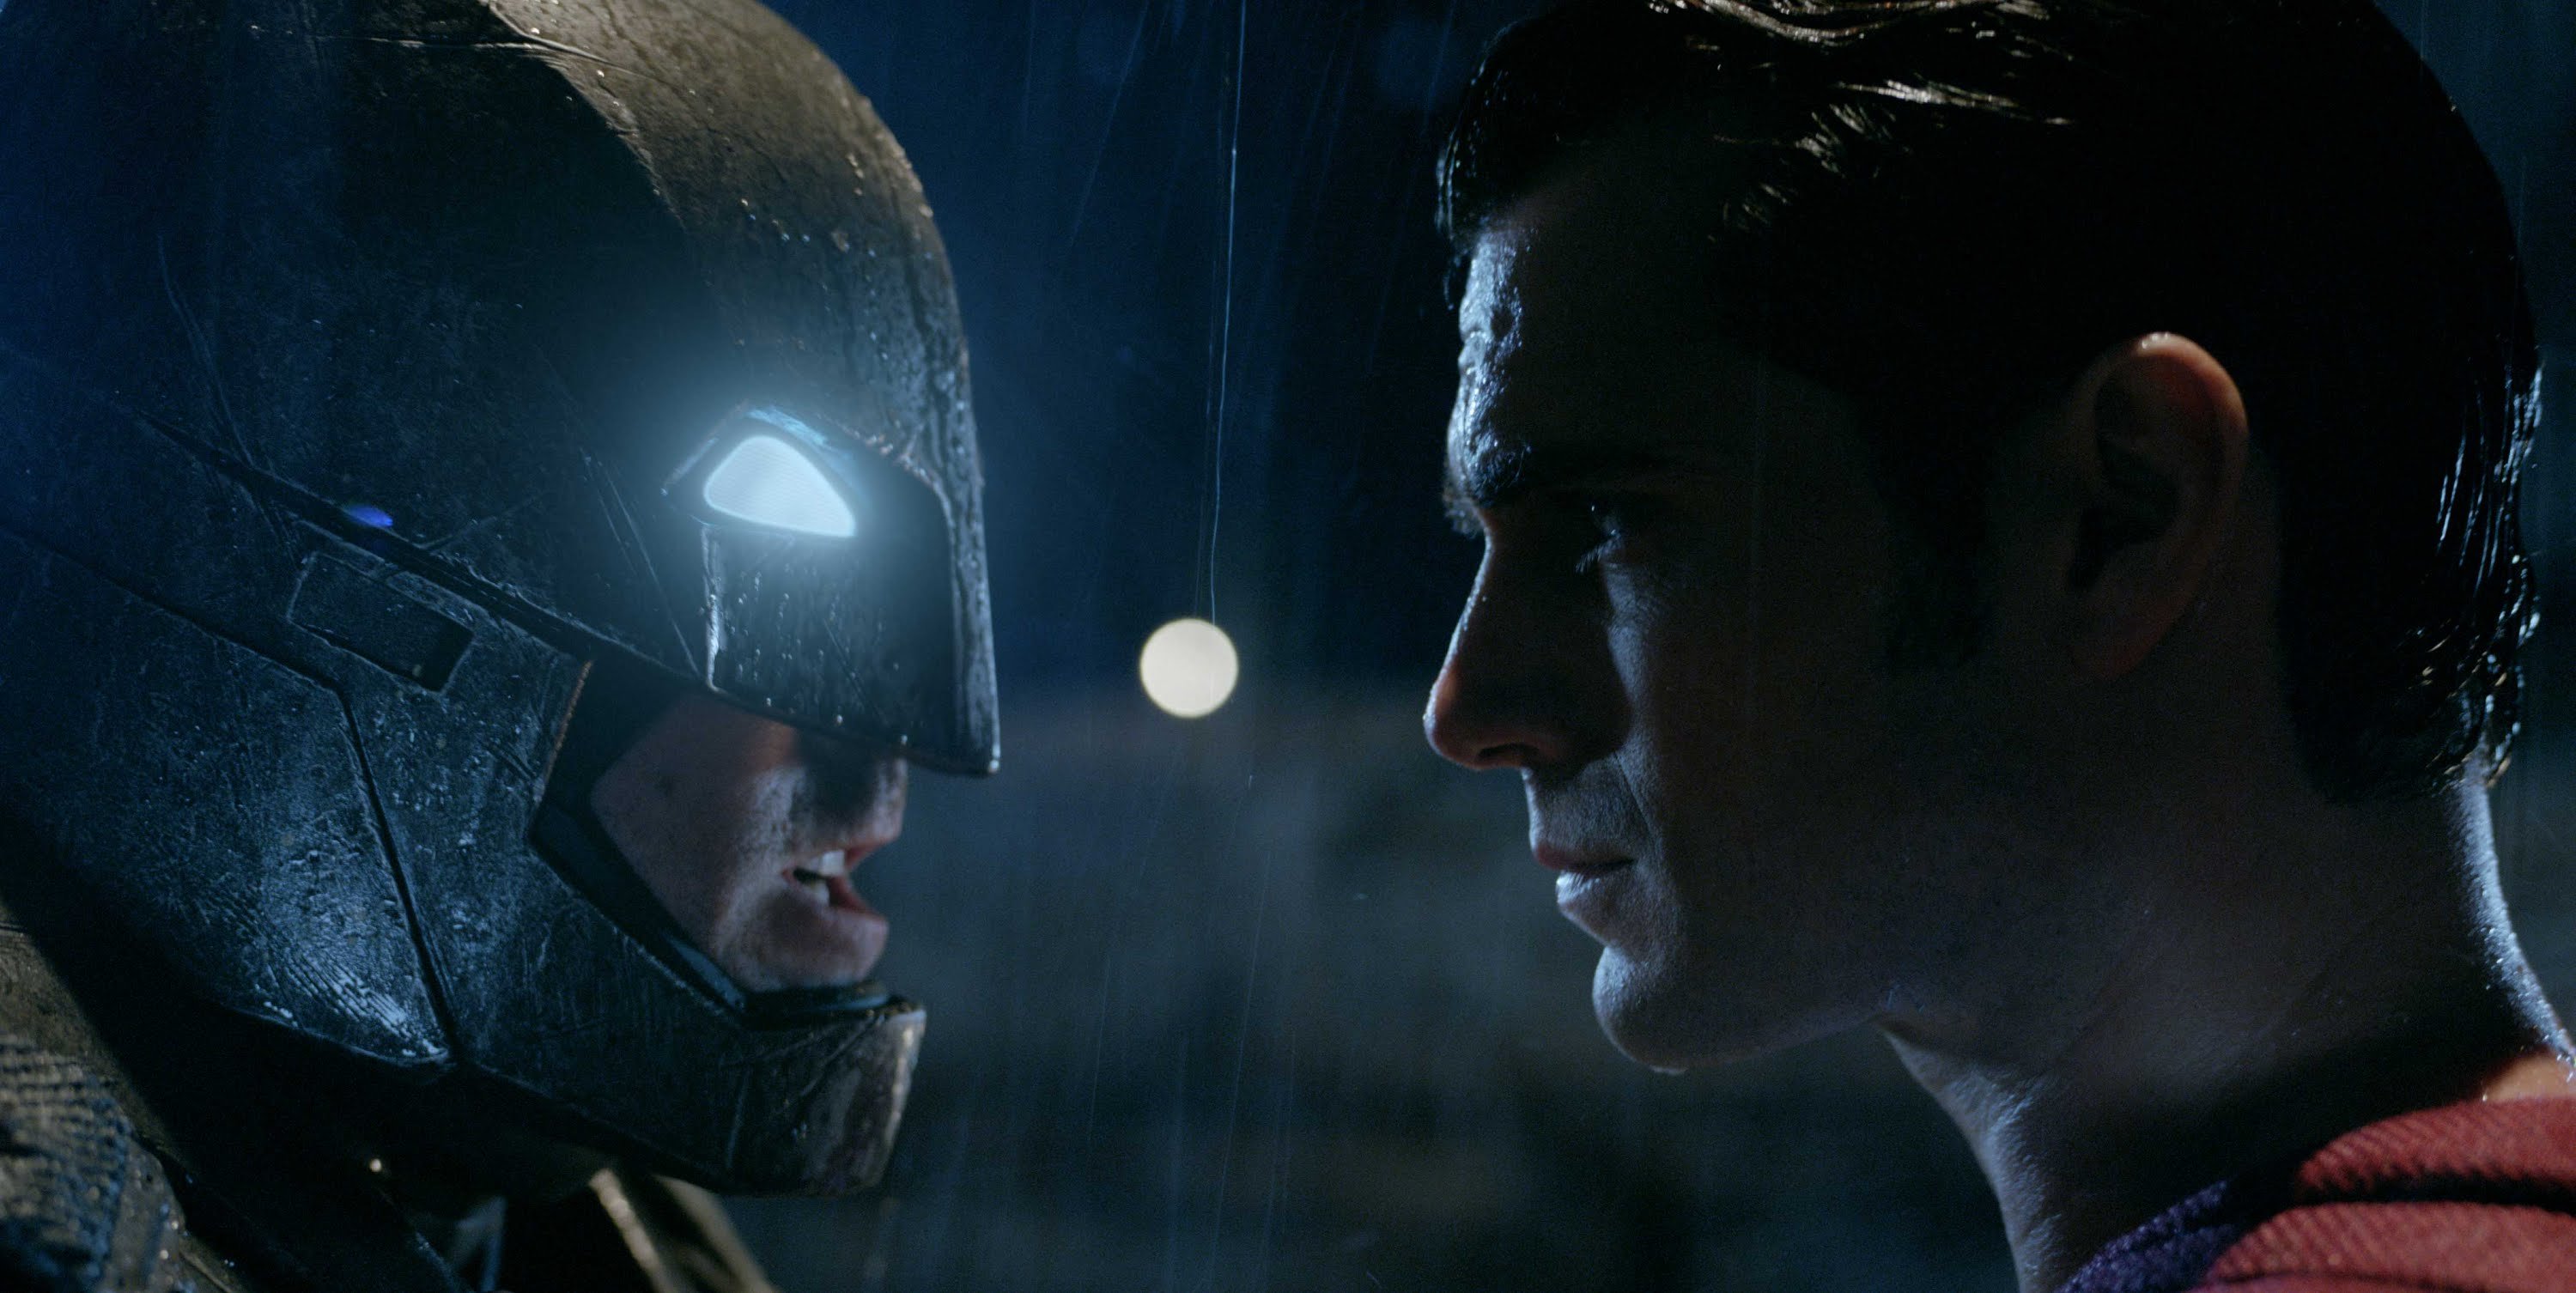 Batman, Superman e Mulher-Maravilha juntos em filme deixam fãs